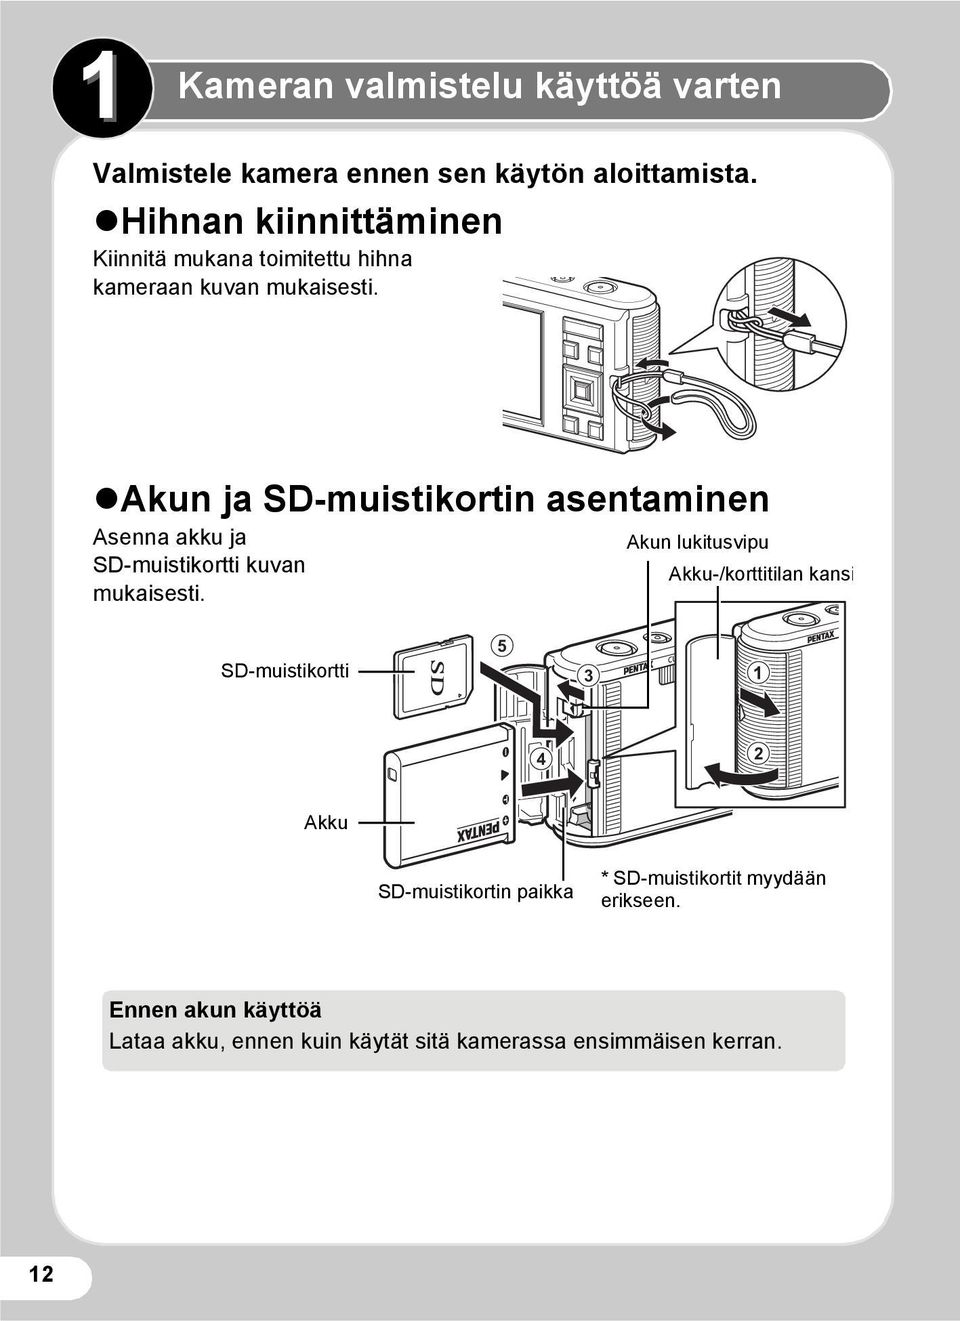 Akun ja SD-muistikortin asentaminen Asenna akku ja SD-muistikortti kuvan mukaisesti.